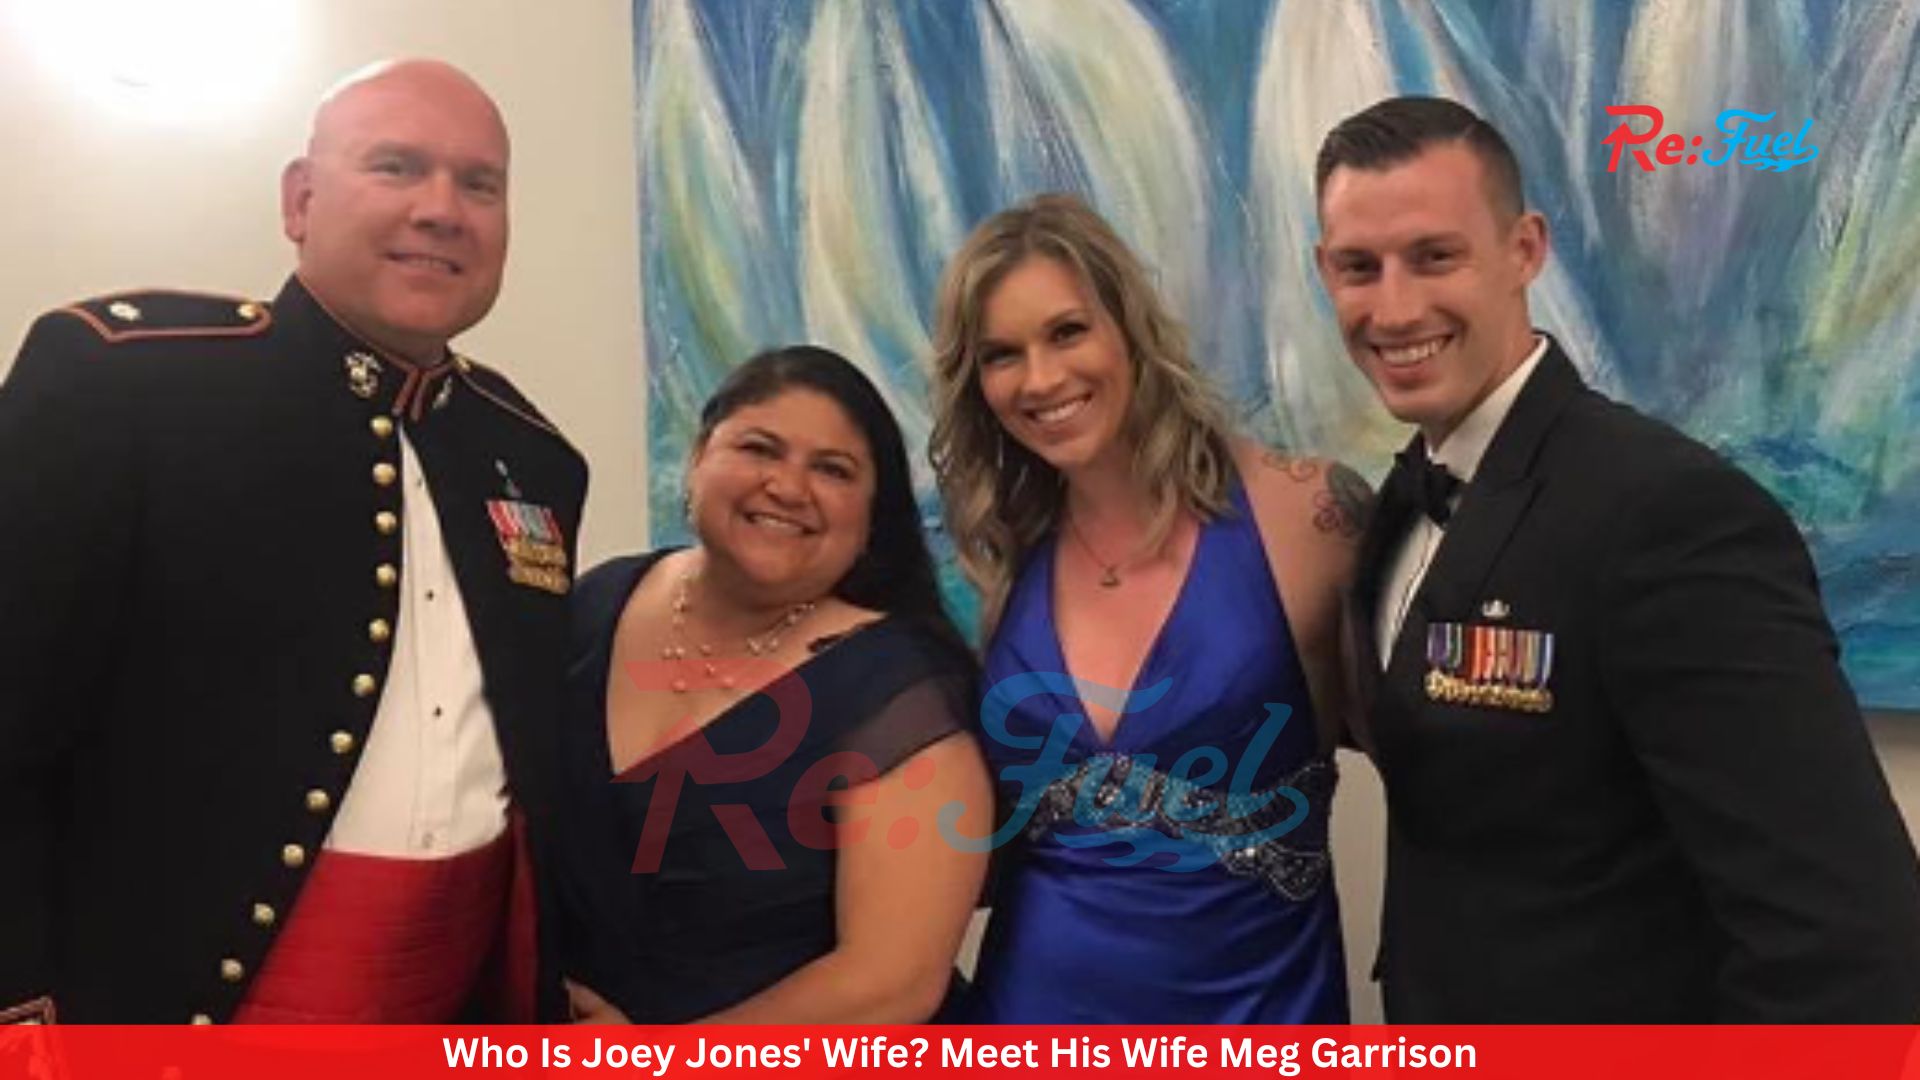 Who Is Joey Jones' Wife? Meet His Wife Meg Garrison